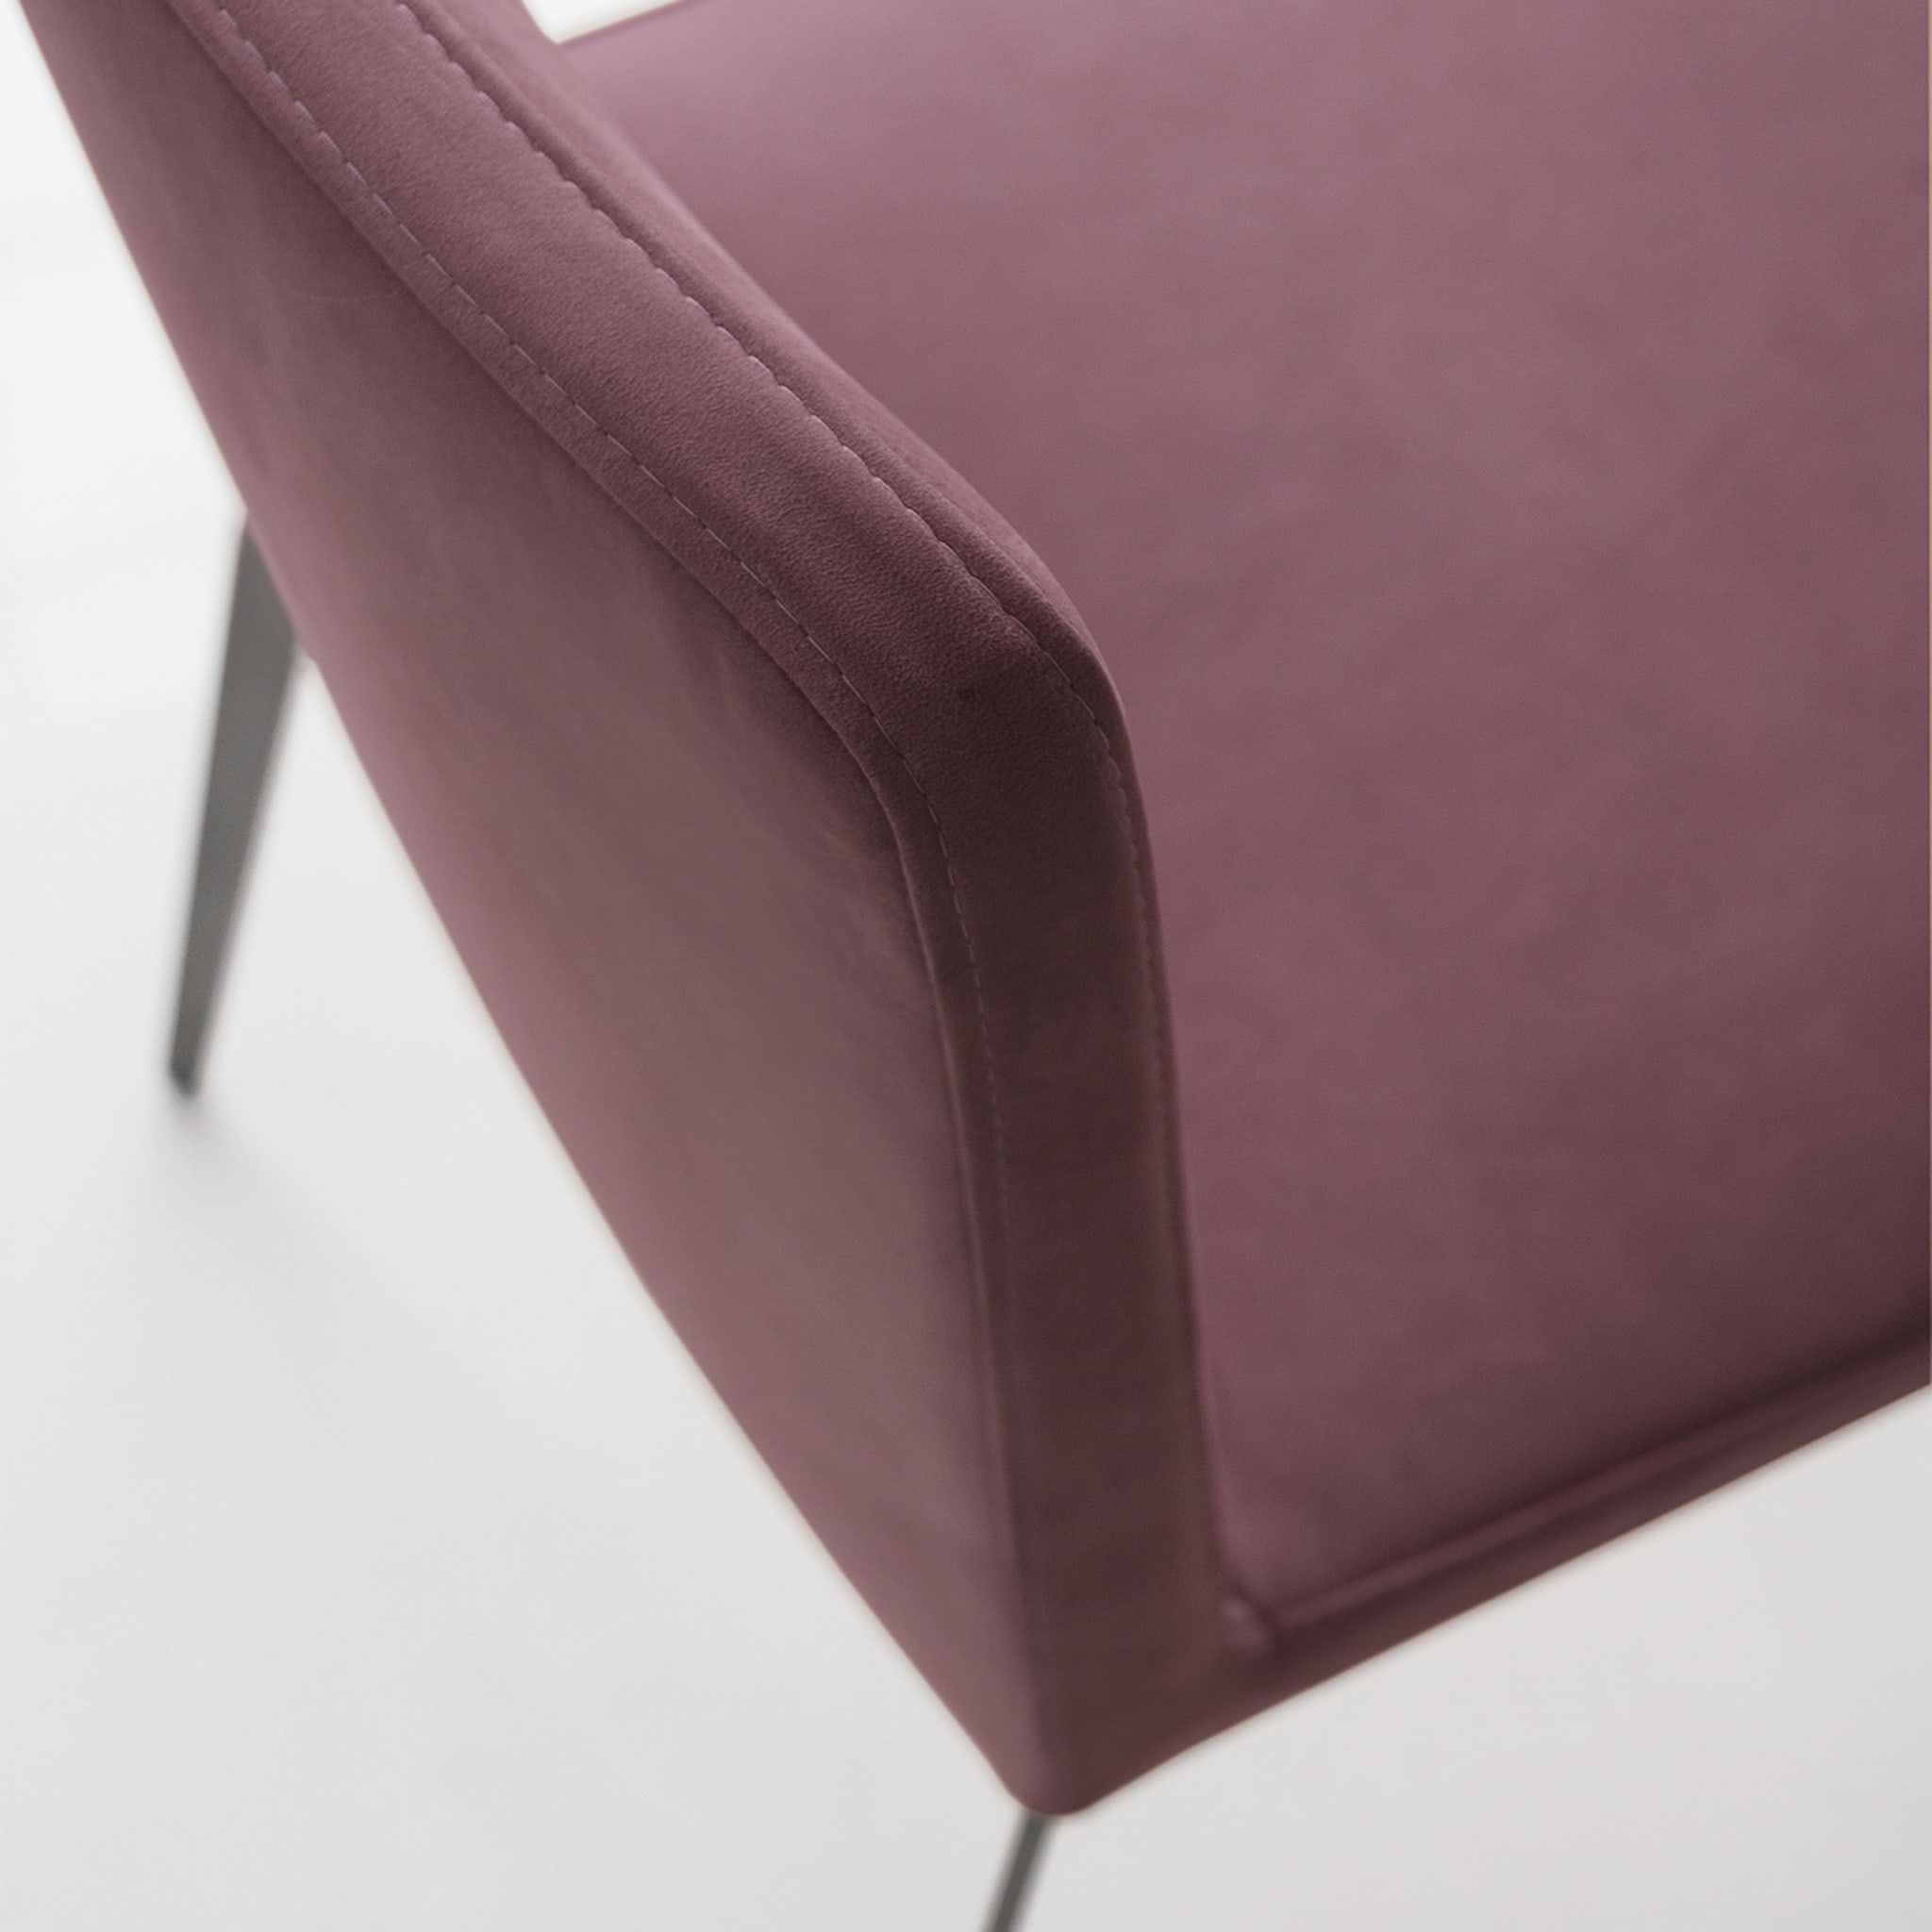 Flexa Burgundy Chair by Giuseppe Bavuso - Alternative view 1